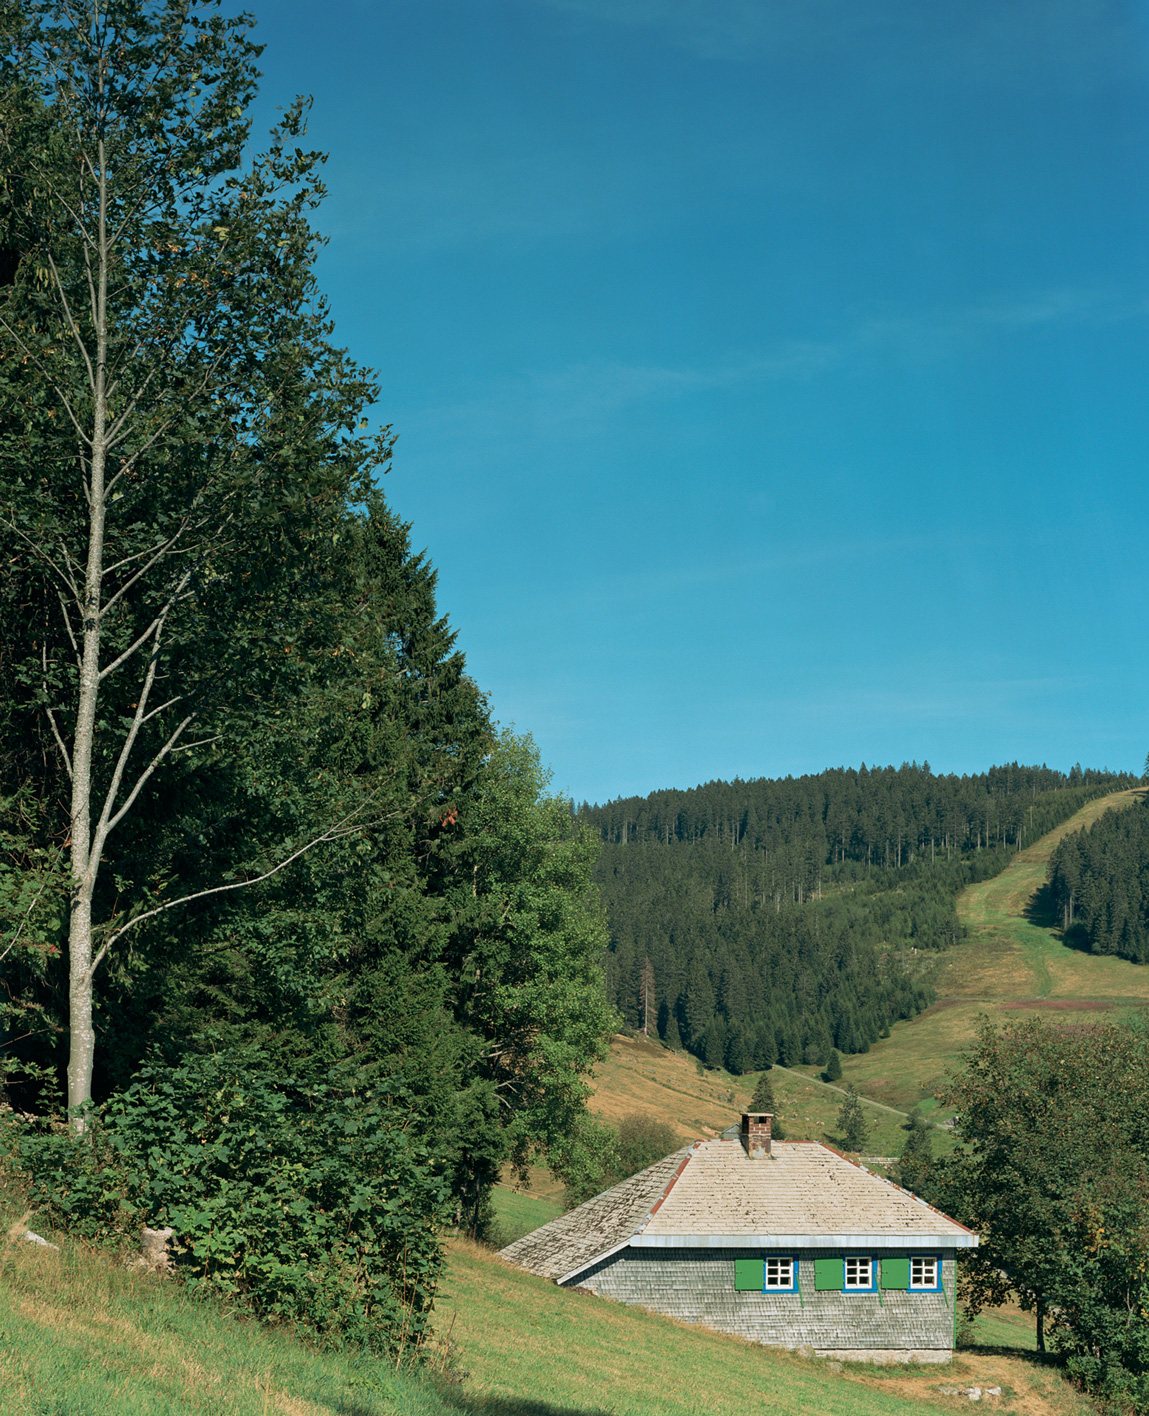 Patrick Lakey, Heidegger: Hut, Todtnauberg, Black Forest, Germany, I, 2005.